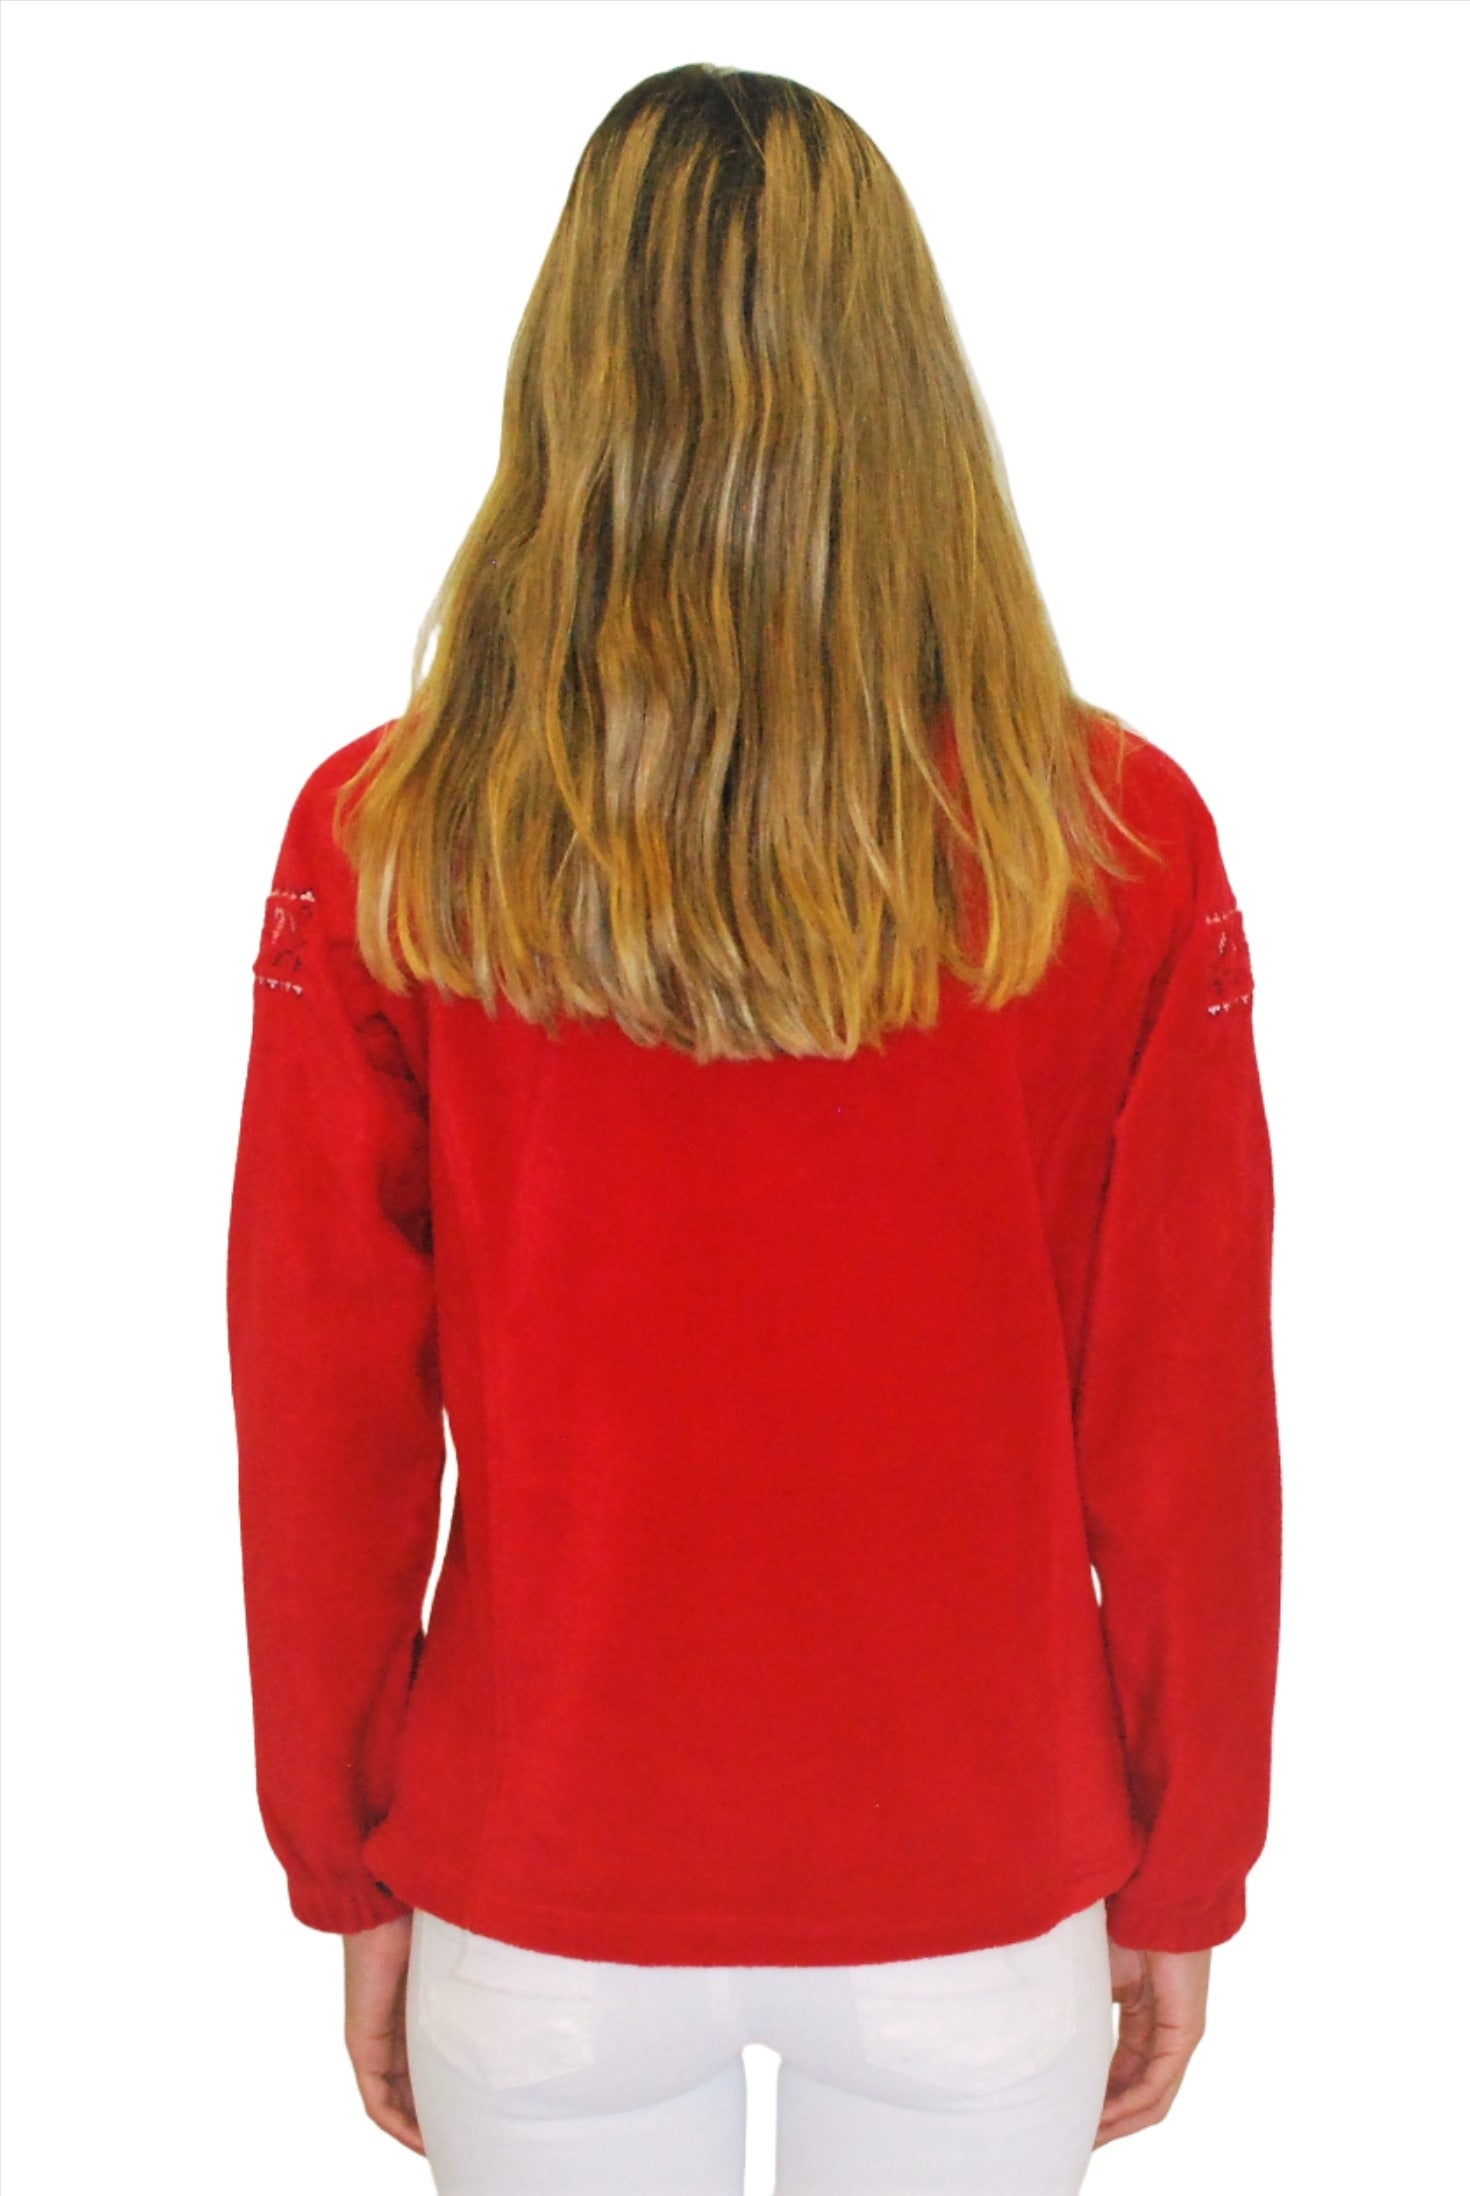 Women's embroidered full-zip fleece jacket. Red